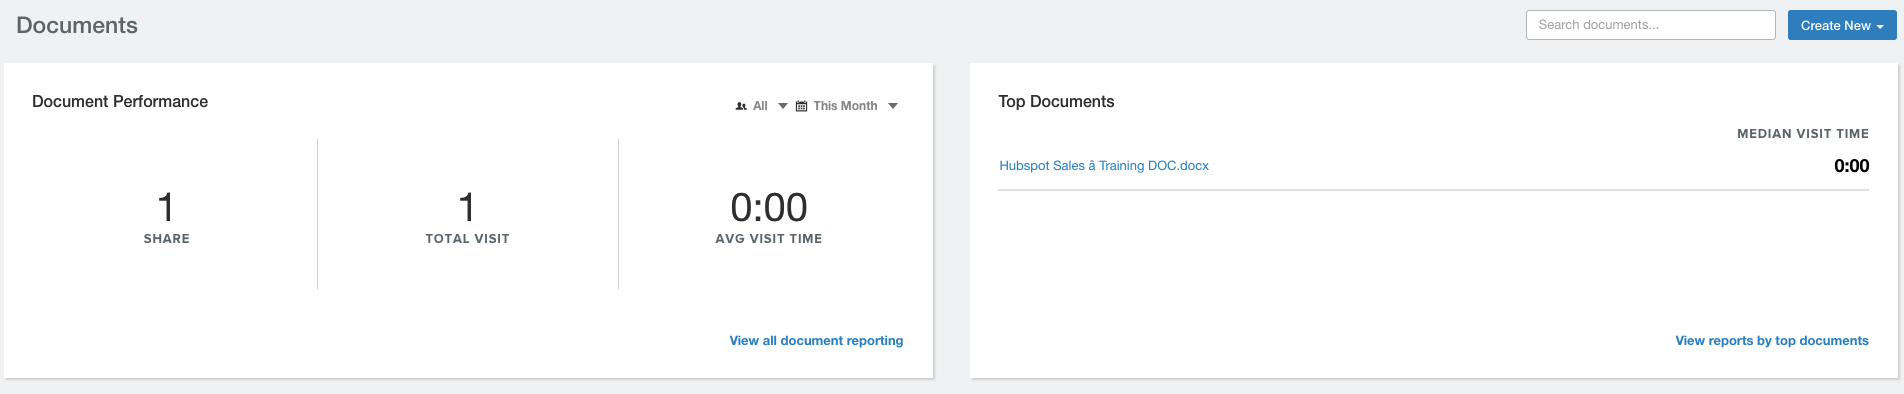 Hubspot-Sales-documents.png